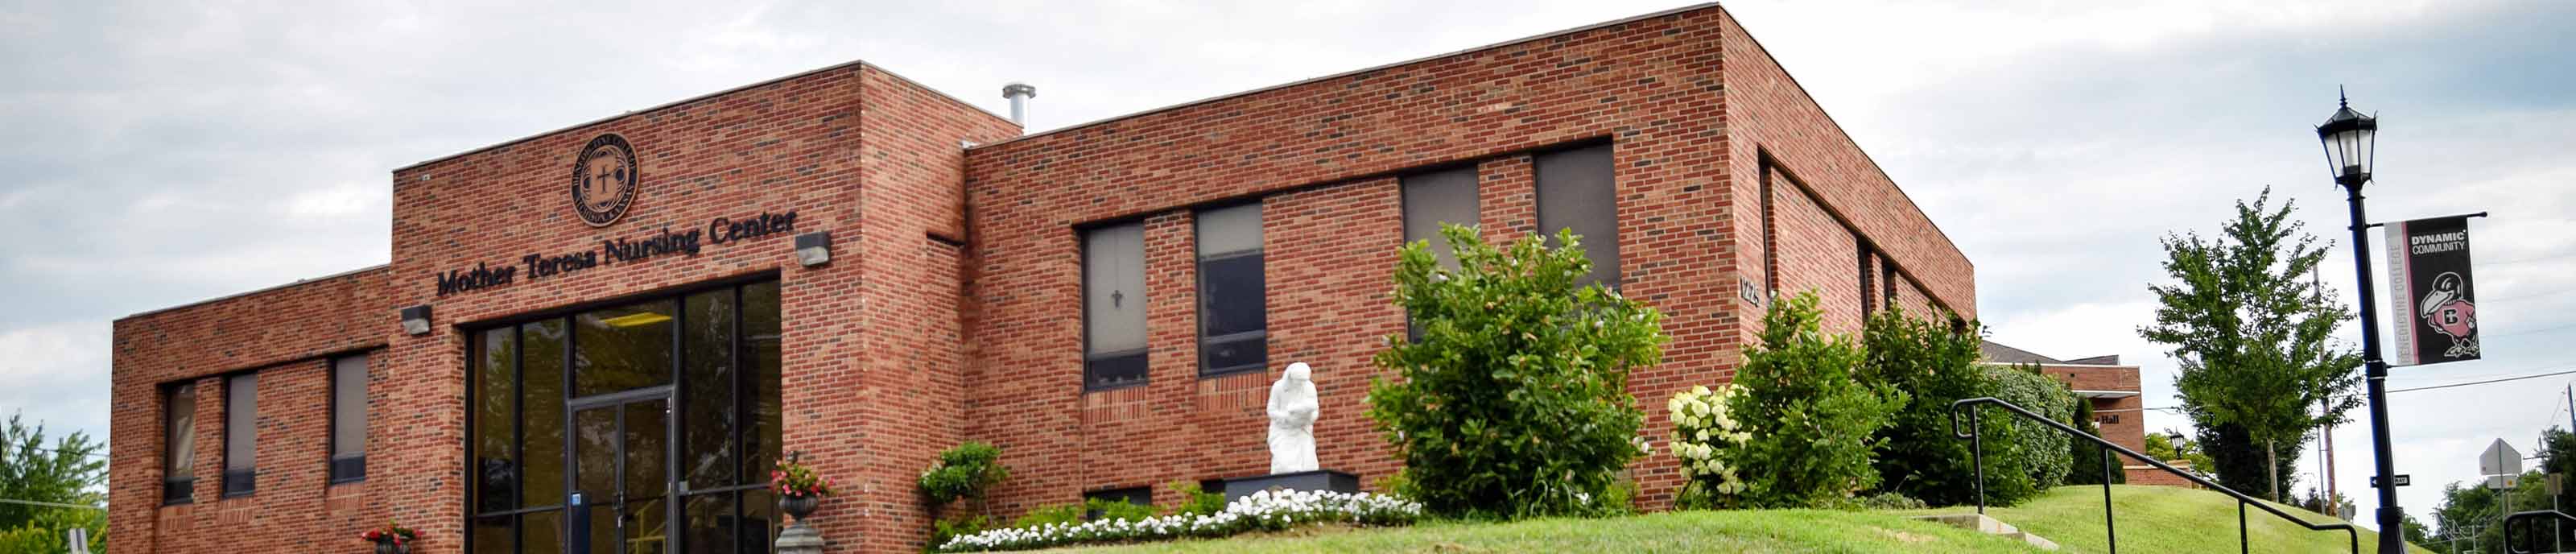 Mother Teresa Nursing Center